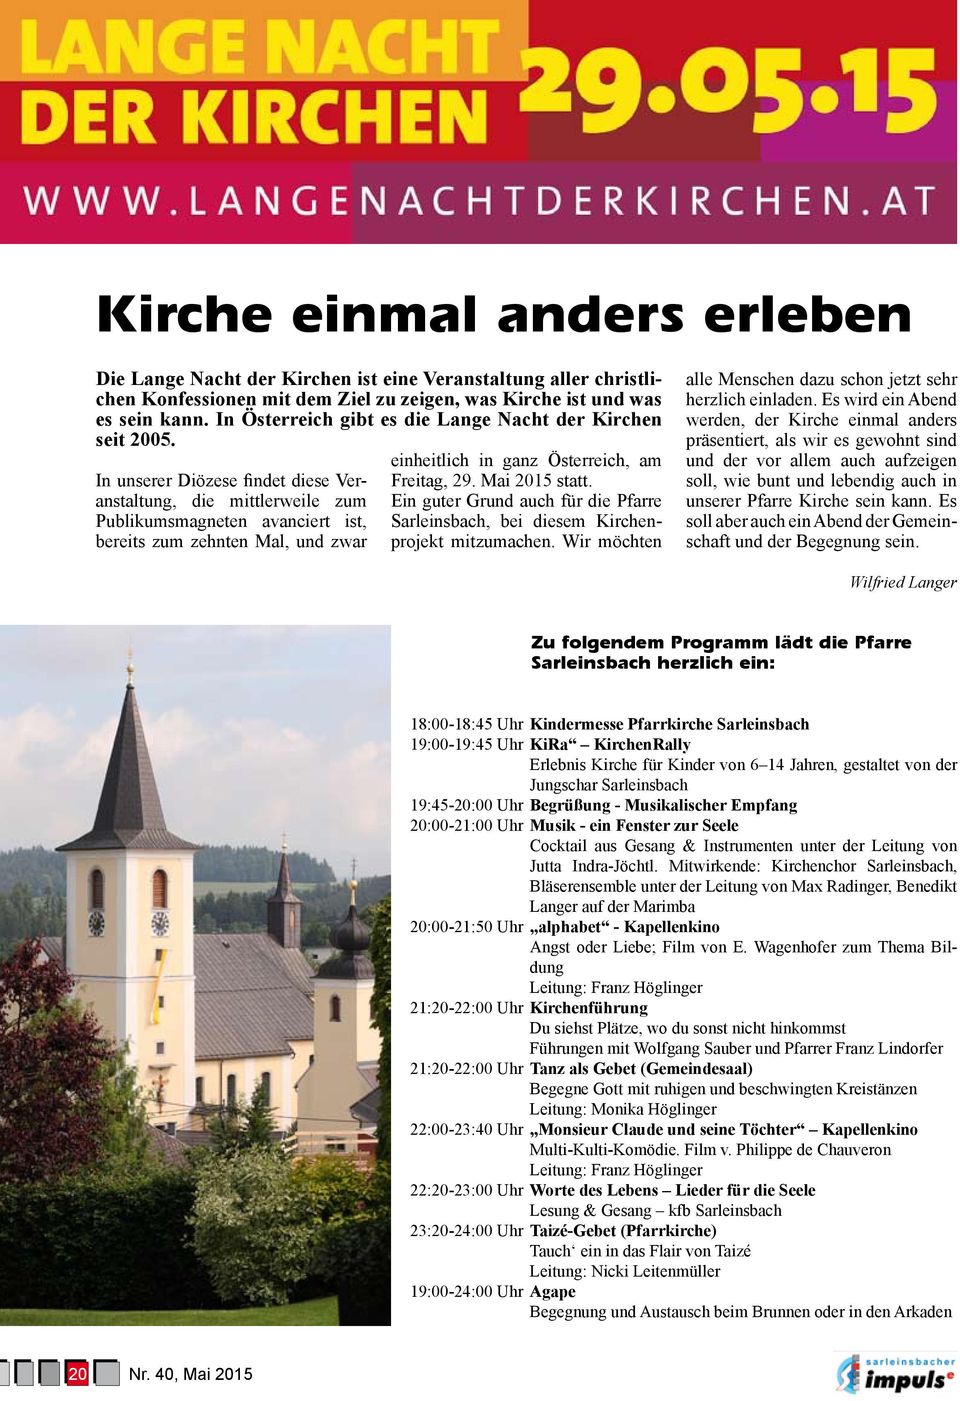 In unserer Diözese findet diese Veranstaltung, die mittlerweile zum Publikumsmagneten avanciert ist, bereits zum zehnten Mal, und zwar einheitlich in ganz Österreich, am Freitag, 29. Mai 2015 statt.